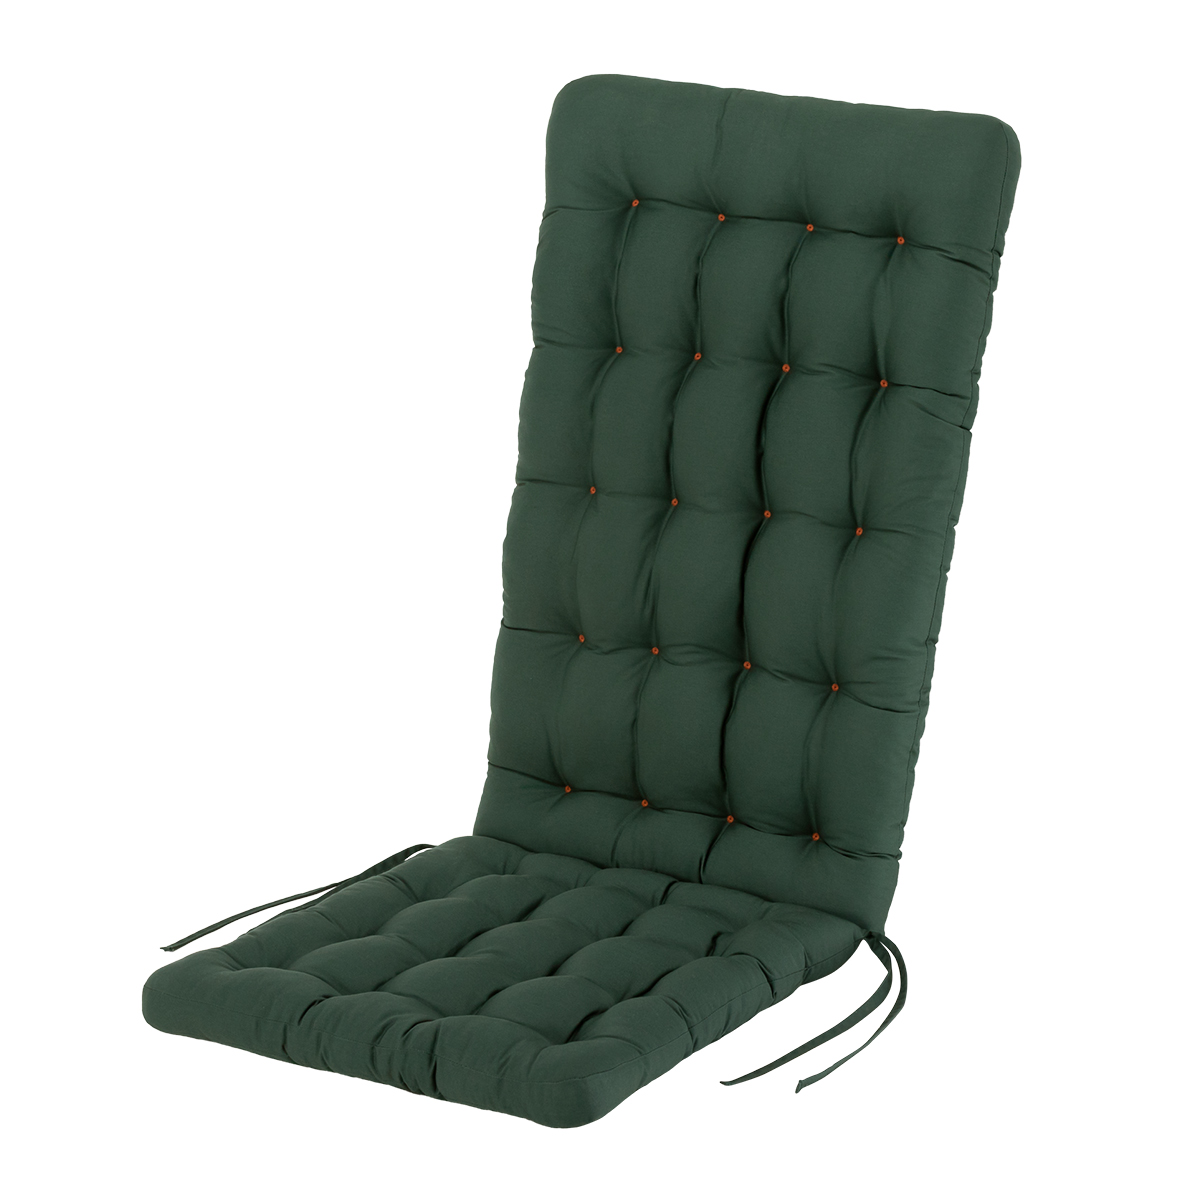 Sitzauflage dunkelgrün für Hochlehner | 8/6 cm dicke Polsterung, wetterfest | mit Bändern zur Befestigung an Gartenstuhl | HAVE A SEAT Living 